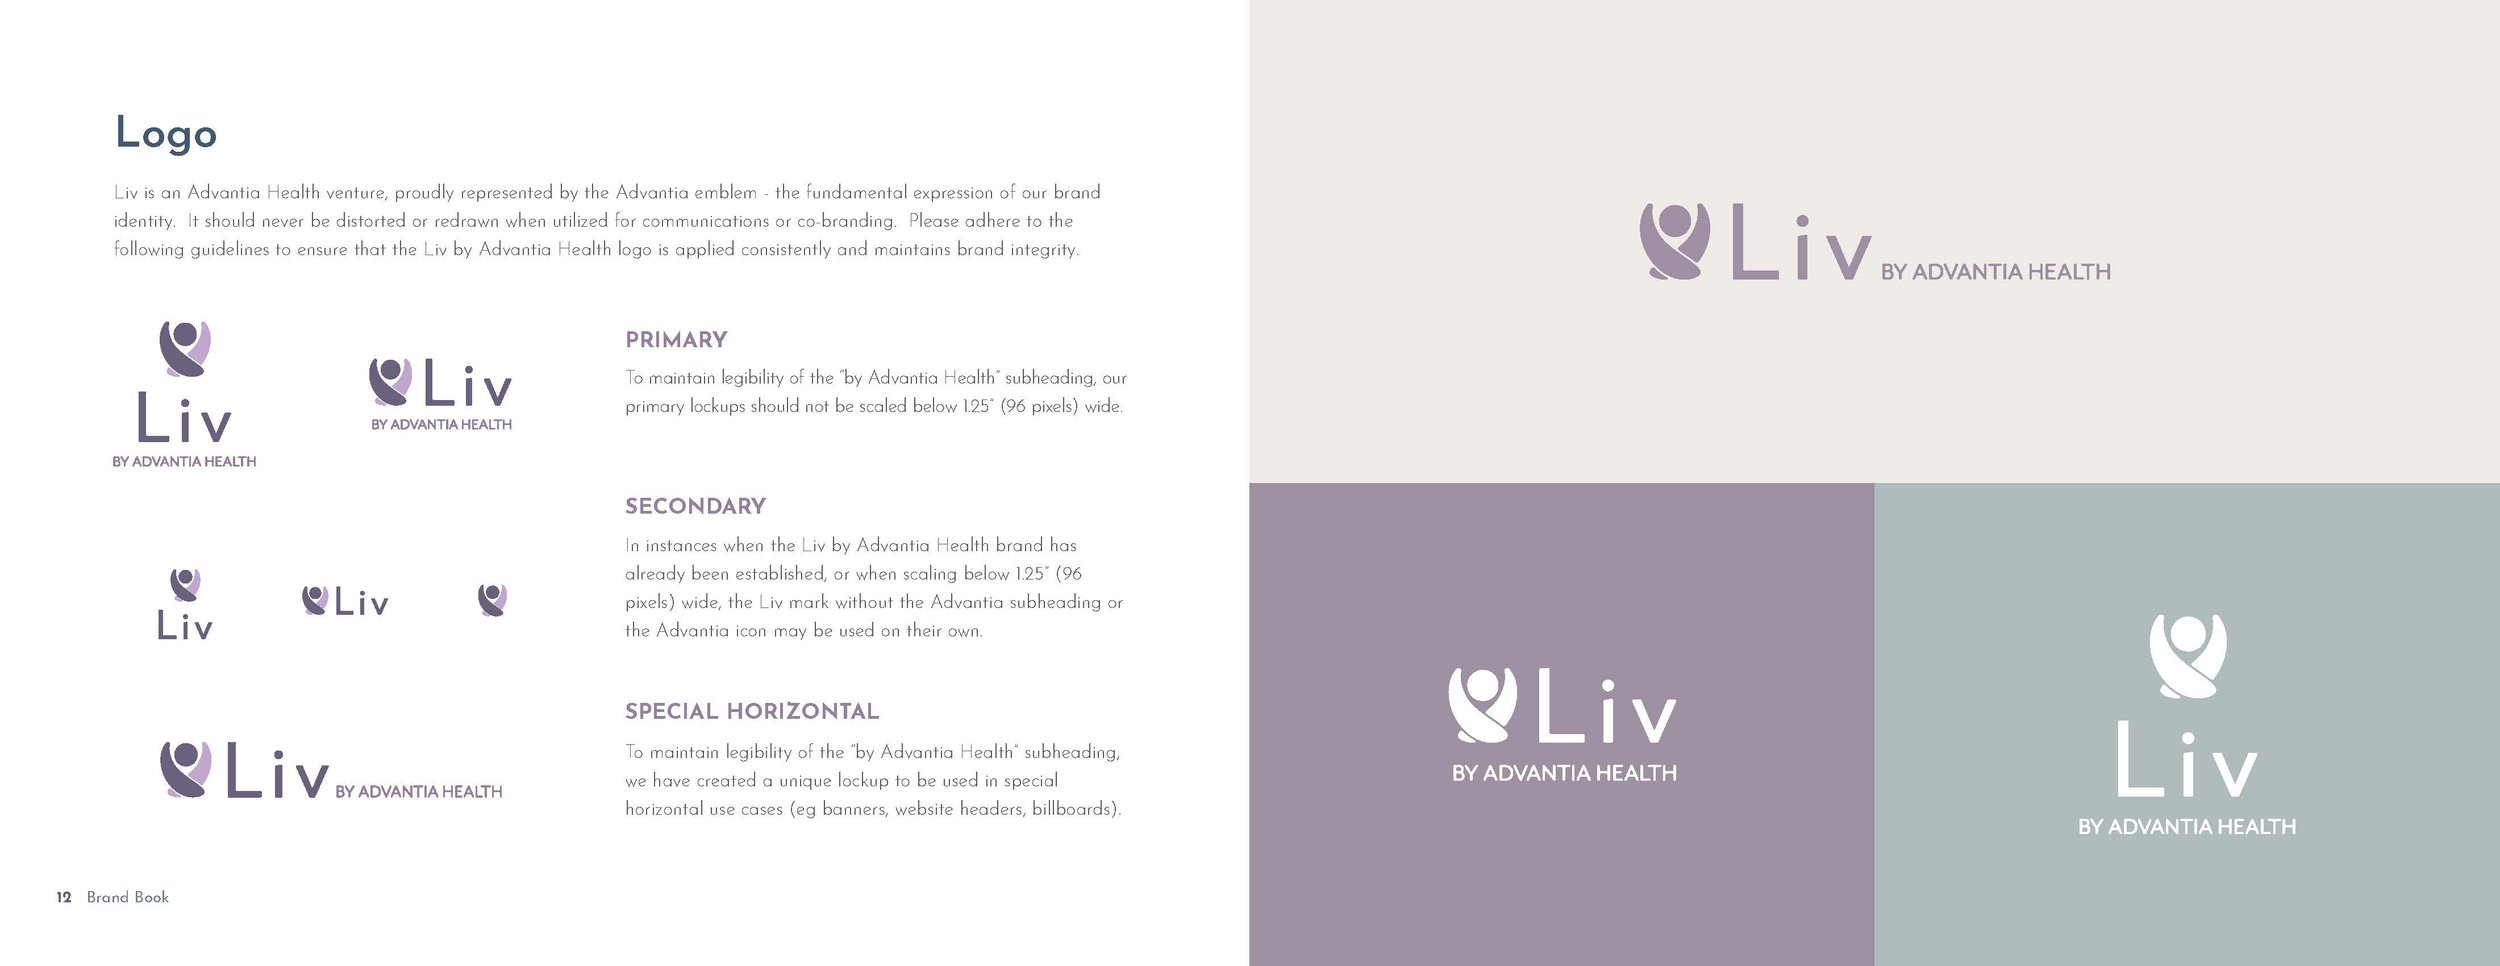 Brand Guide_Liv by Advantia Health_2021_Page_07.jpg